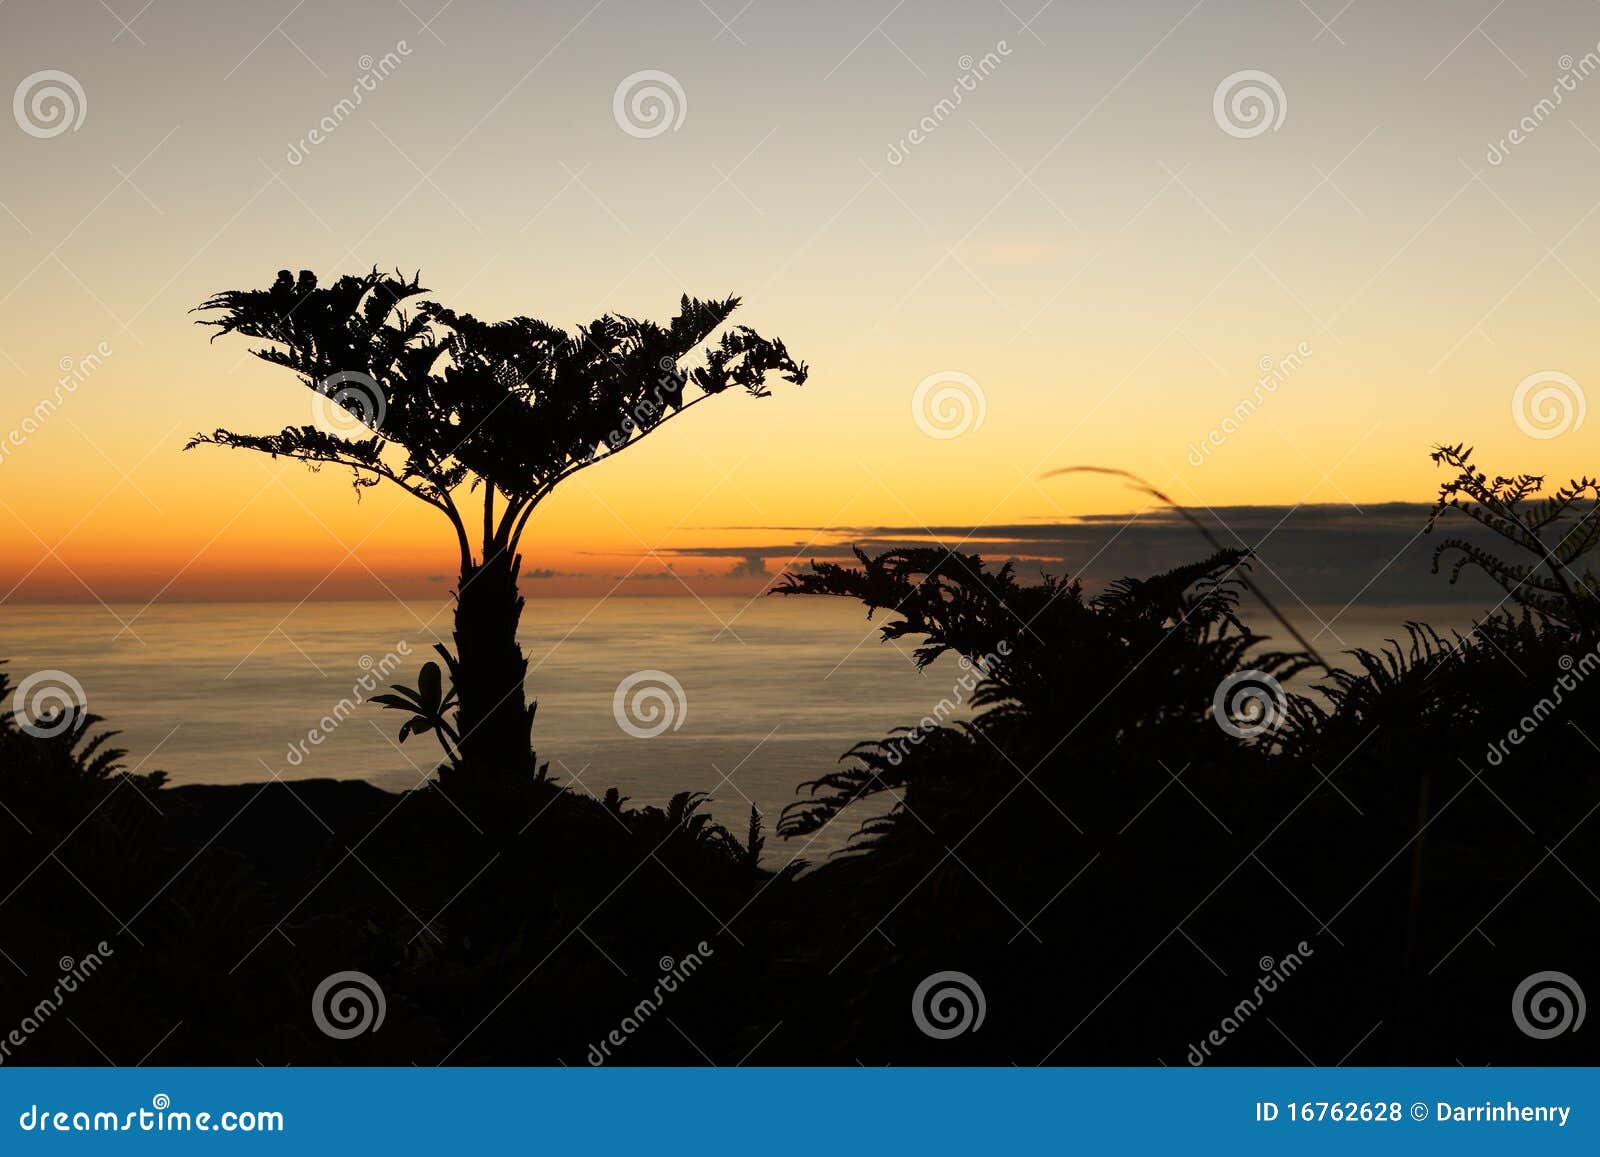 endemic tree ferns at dawn on st helena island